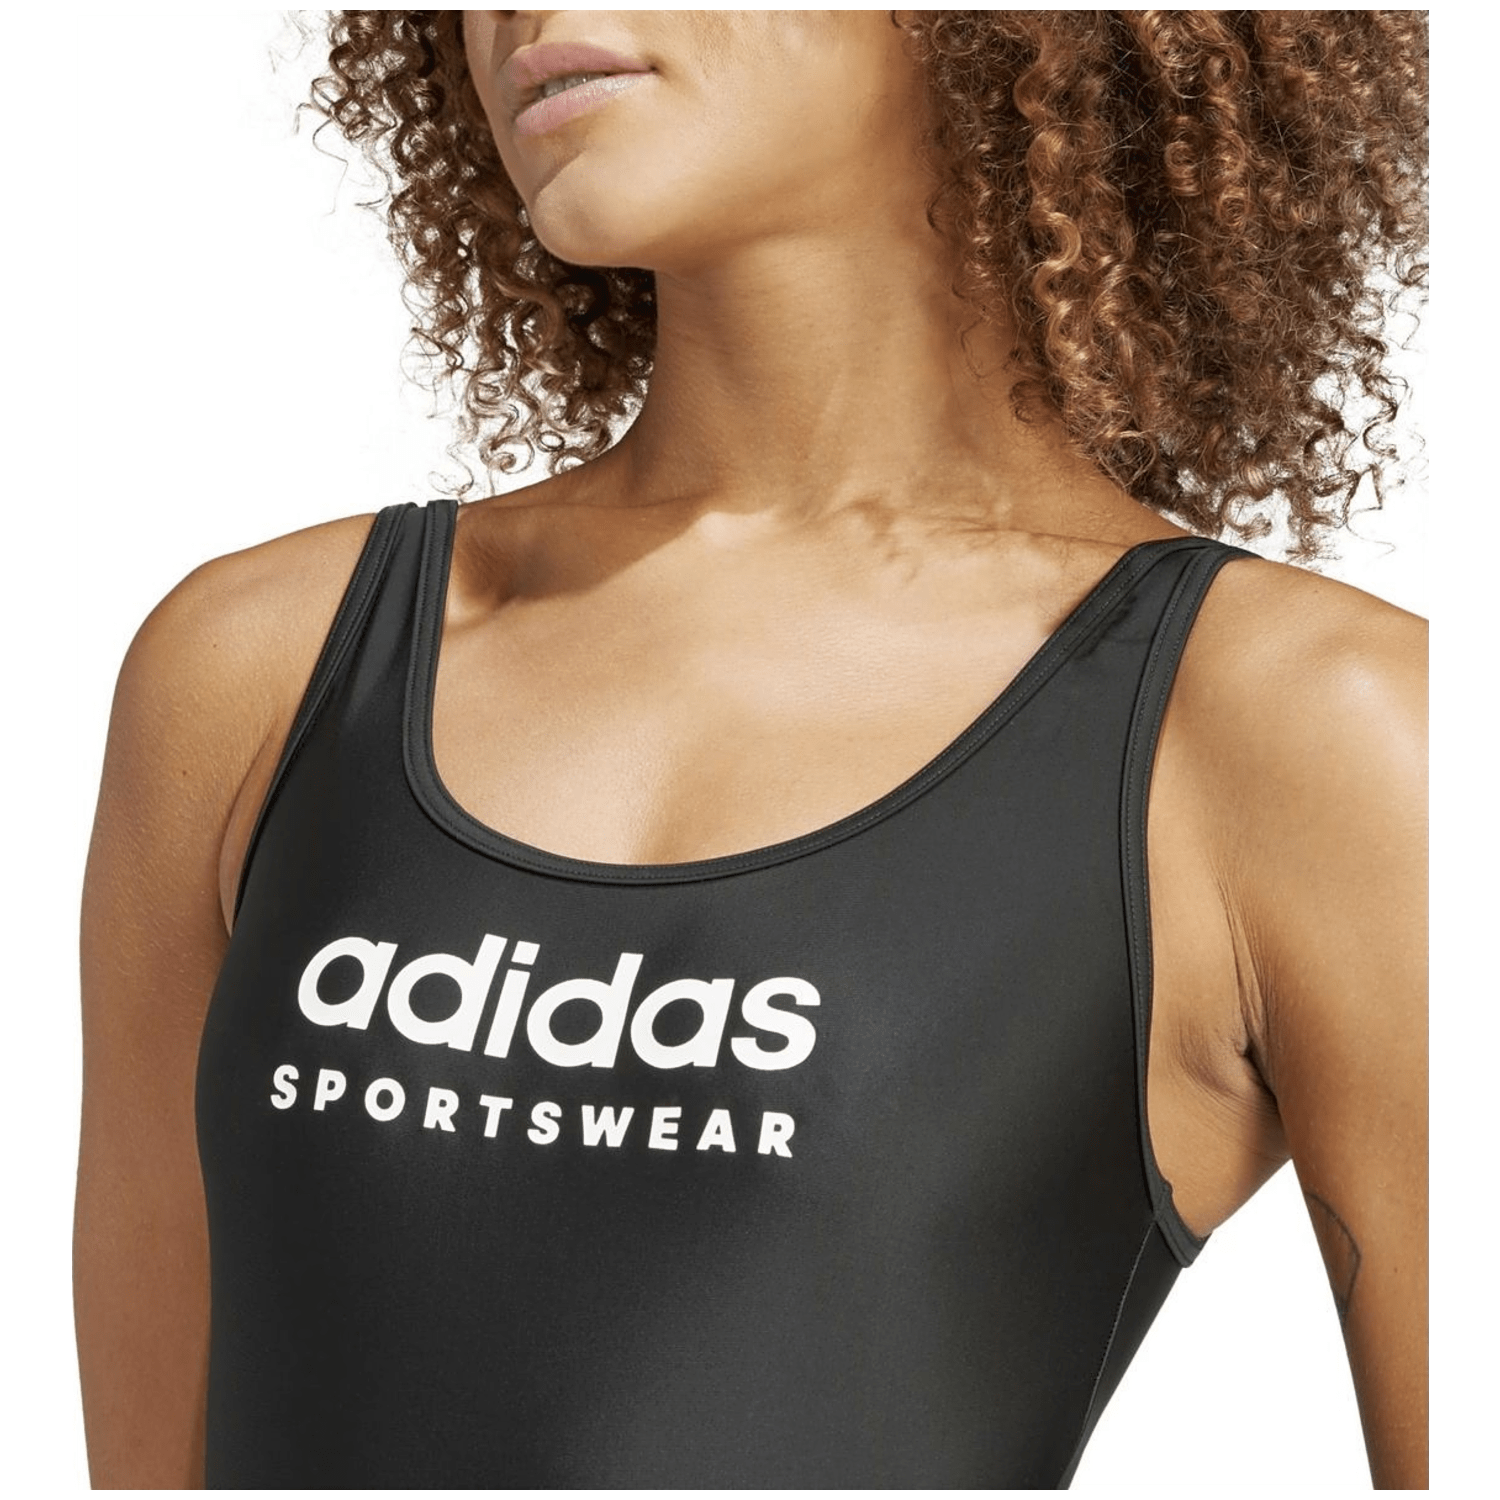 Adidas Sportswear U-Back Swimsuit Damen